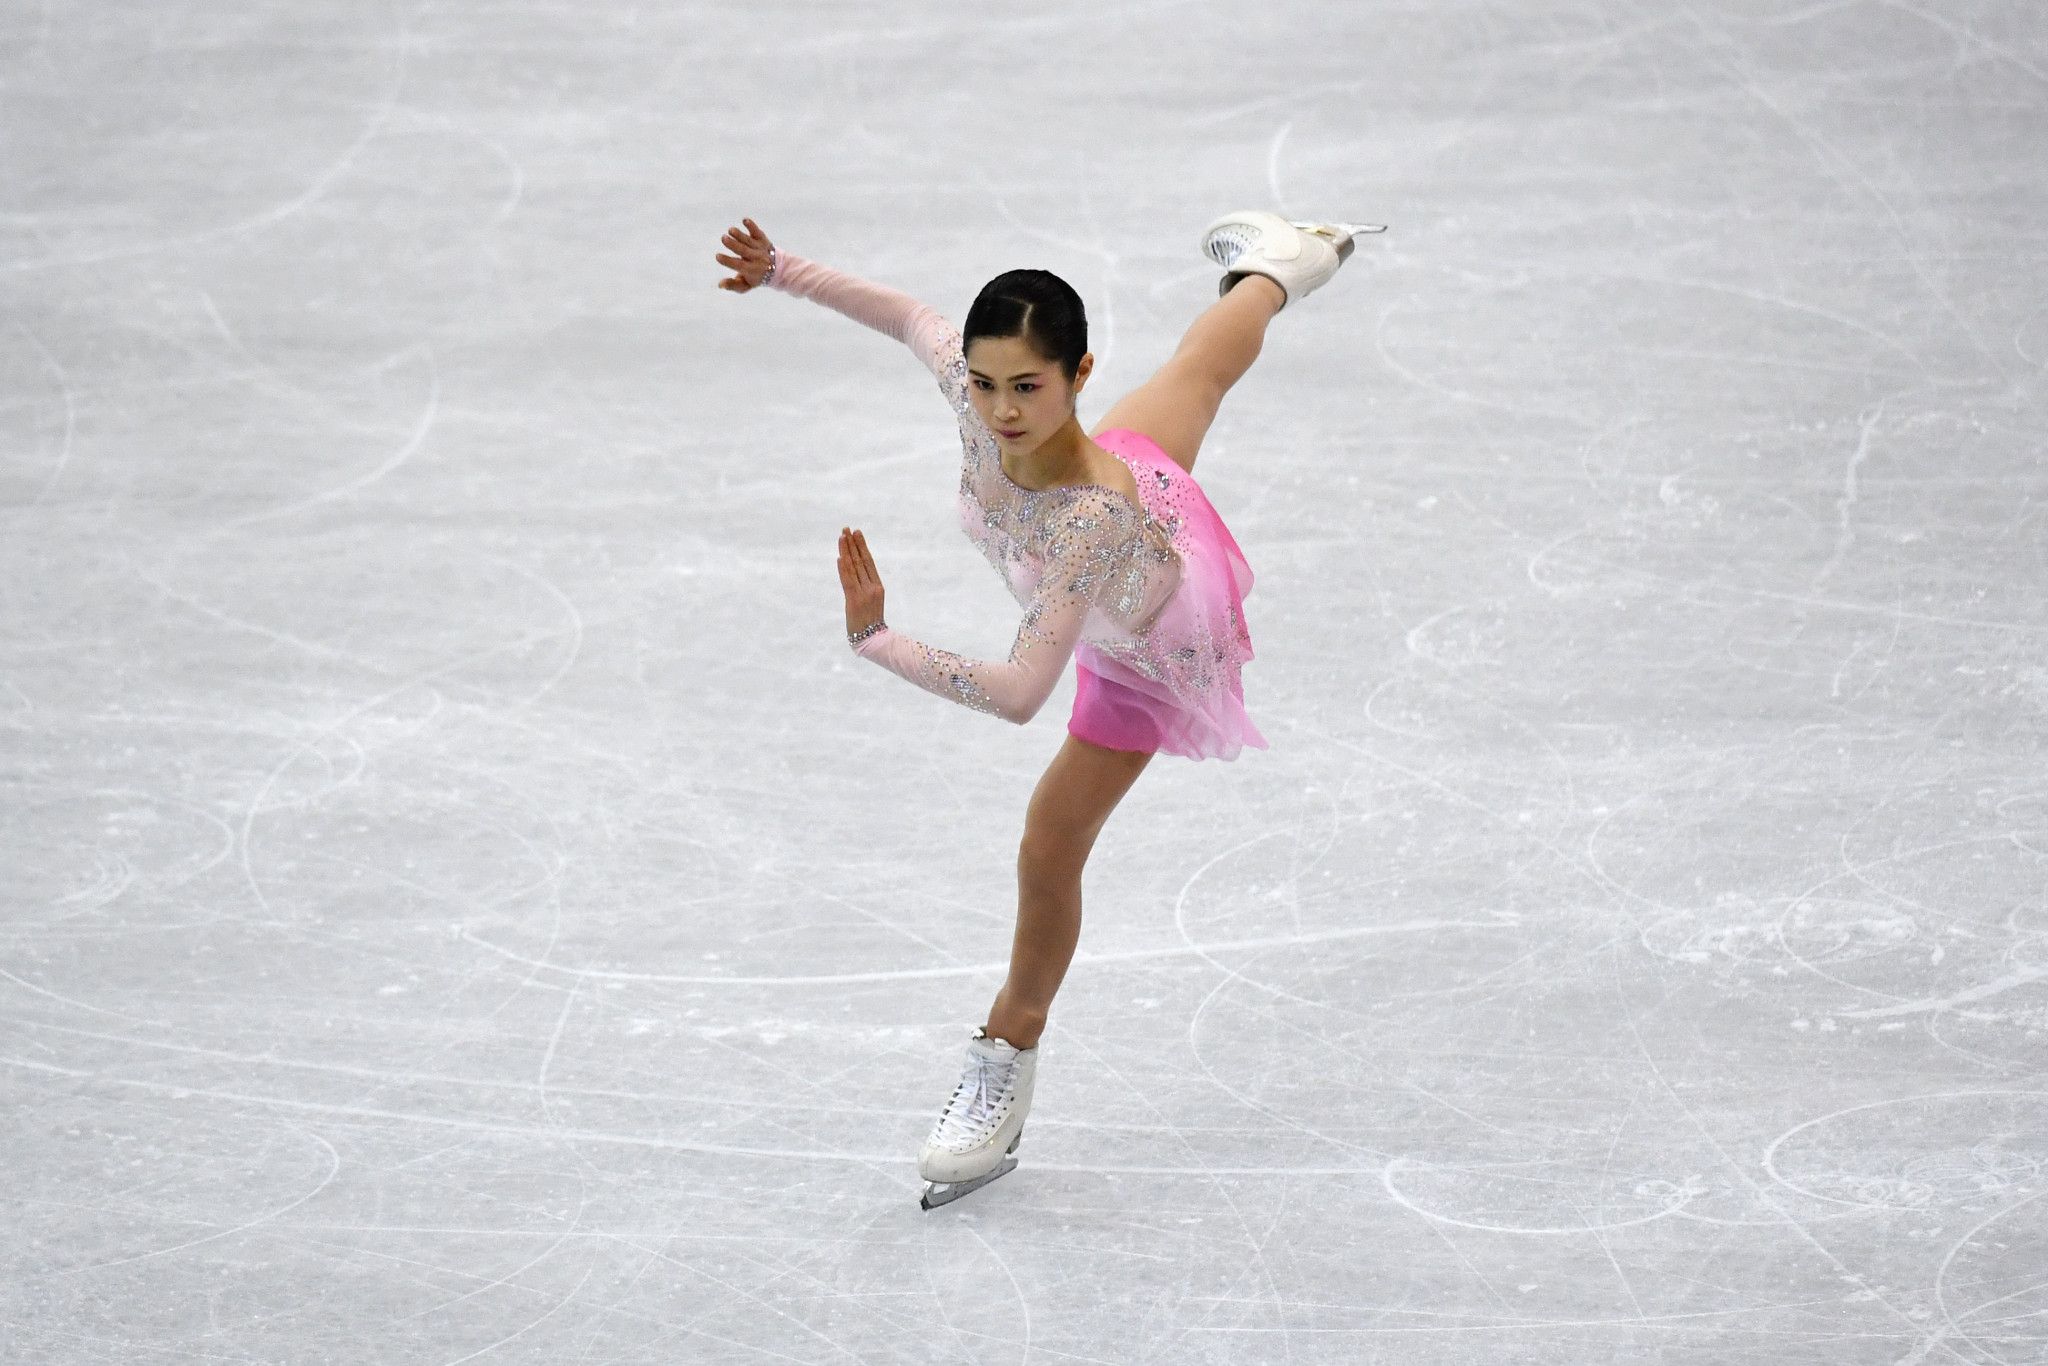 Satoko Miyahara will represent Japan at Pyeongchang 2018 ©Getty Images